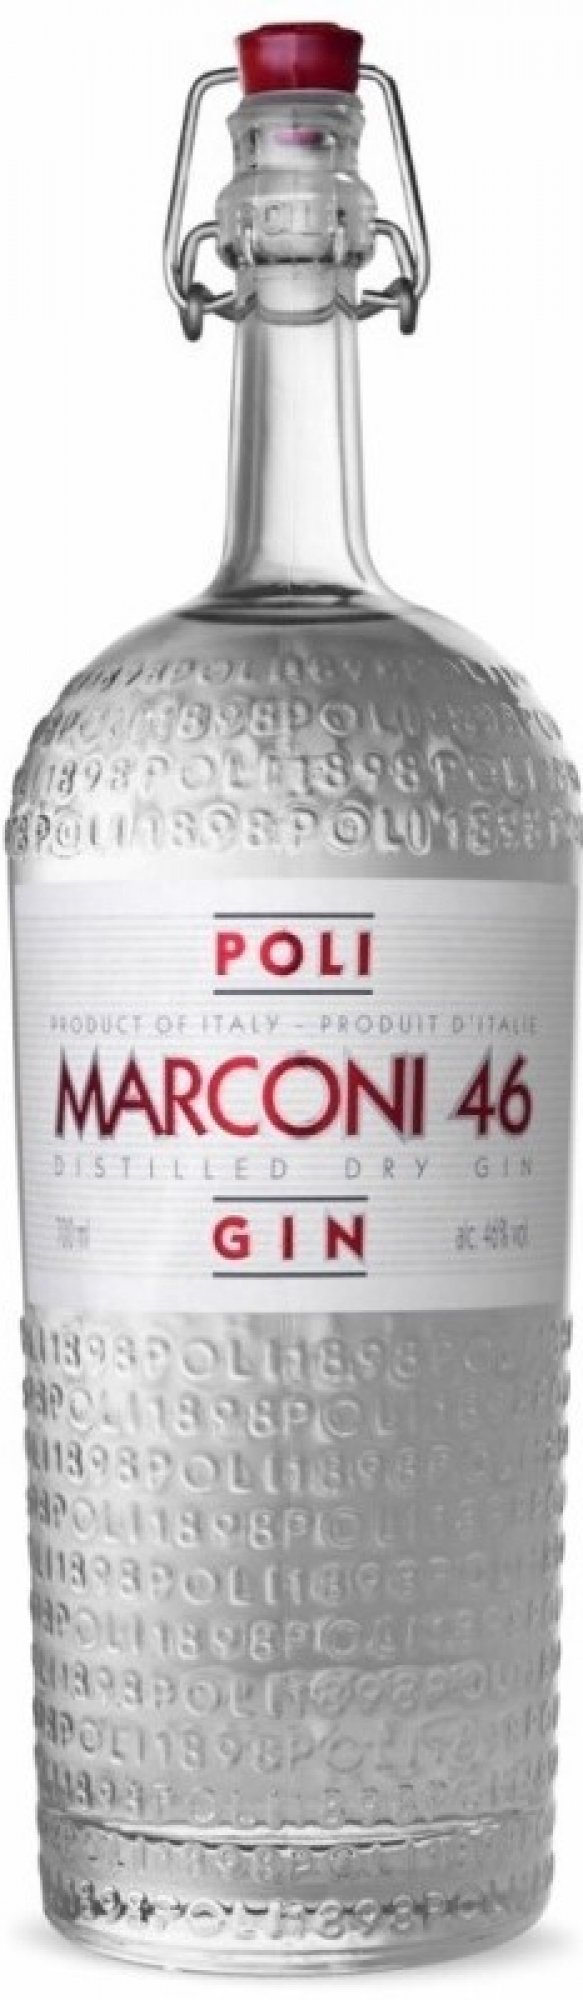 Marconi 46 Gin, Jacopo Poli 0,7l